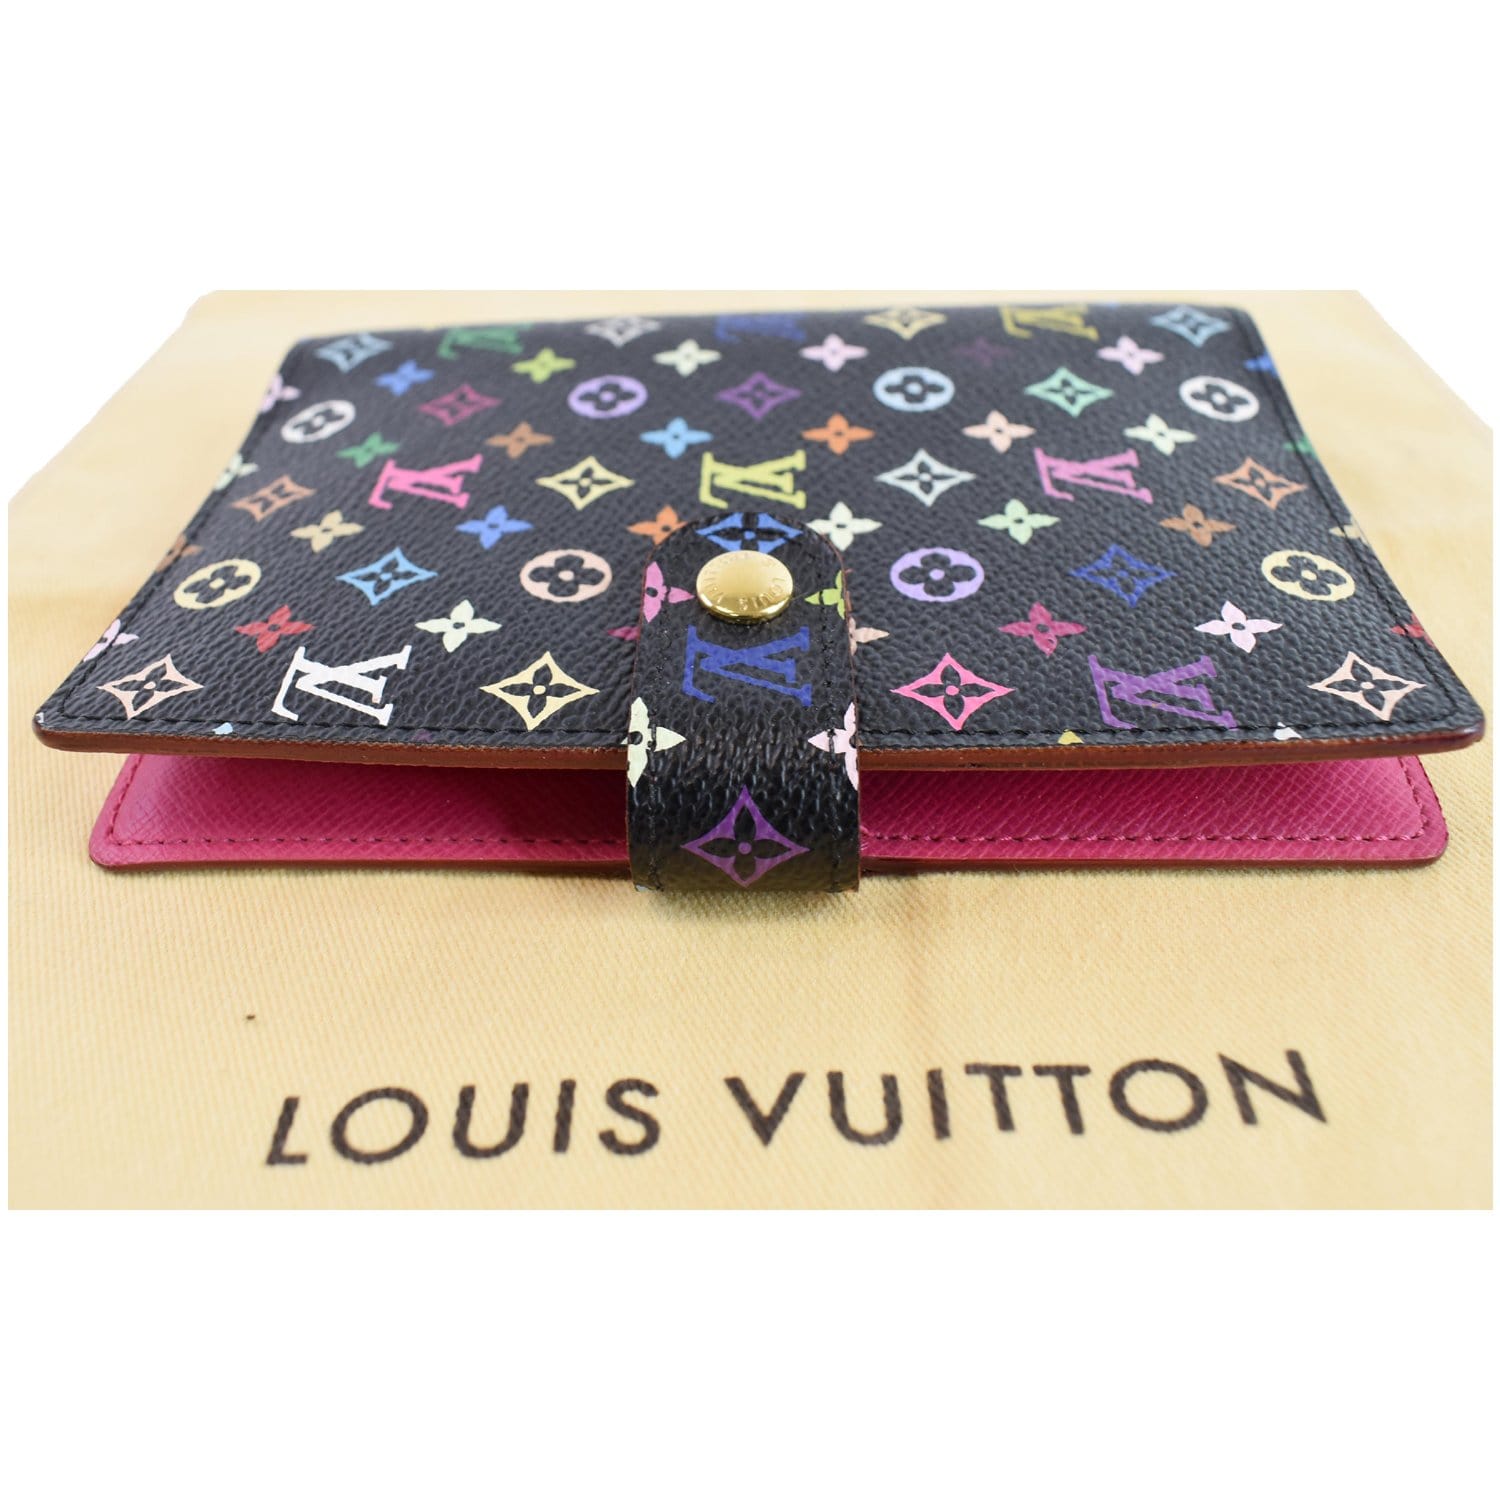 ♥ Planner Setup: Louis Vuitton PM Agenda Multicolor 